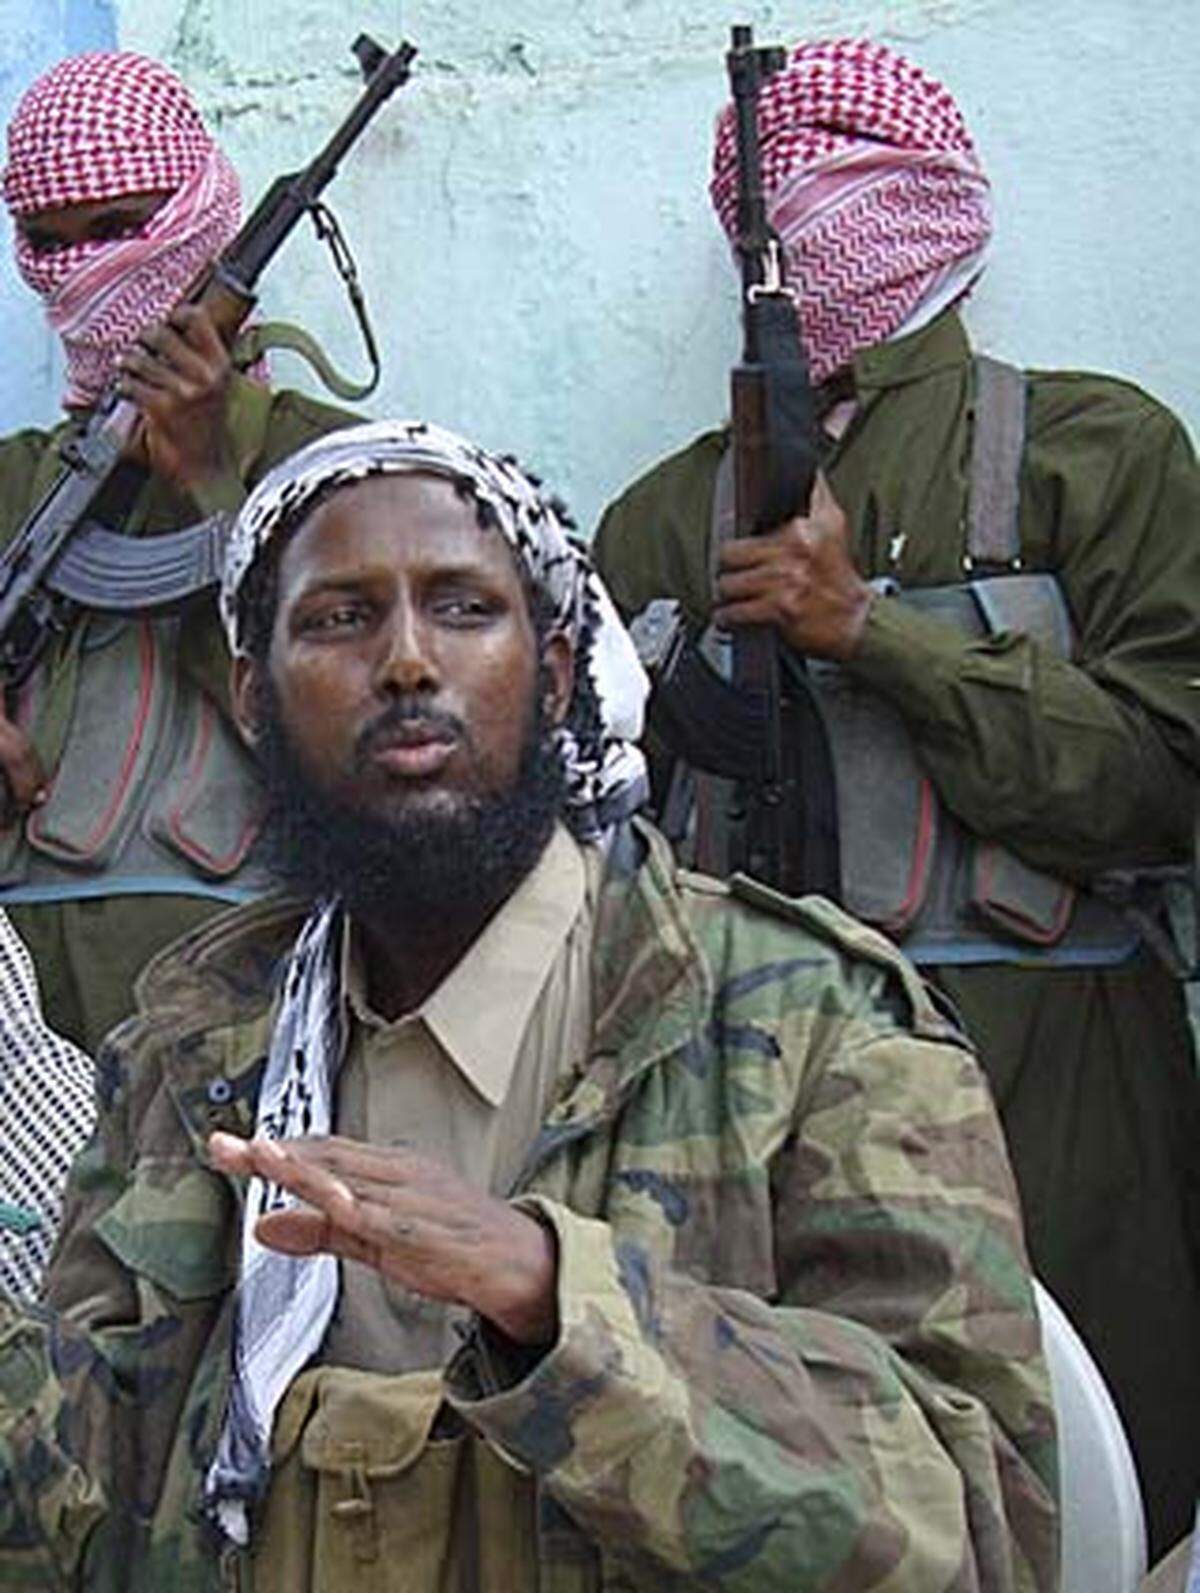 Anfang Mai brachen in der Hauptstadt Mogadischu erneut Kämpfe zwischen islamistischen Aufständischen und regierungstreuen Milizen aus. Hunderte Zivilisten wurden getötet, mehr als 1,5 Millionen Menschen haben ihr Zuhause verloren. In Somalia herrscht seit 18 Jahren fast ununterbrochen Bürgerkrieg. Die islamistische al-Shabaab-Miliz hat mittlerweile die Kontrolle über Teile Südsomalias und in weiten Teilen der Hauptstadt übernommen - die von Äthiopien unterstützte Übergangsregierung kontrolliert nur mehr den Flughafen, den Hafen, Präsidentenpalast und einige Militärlager.